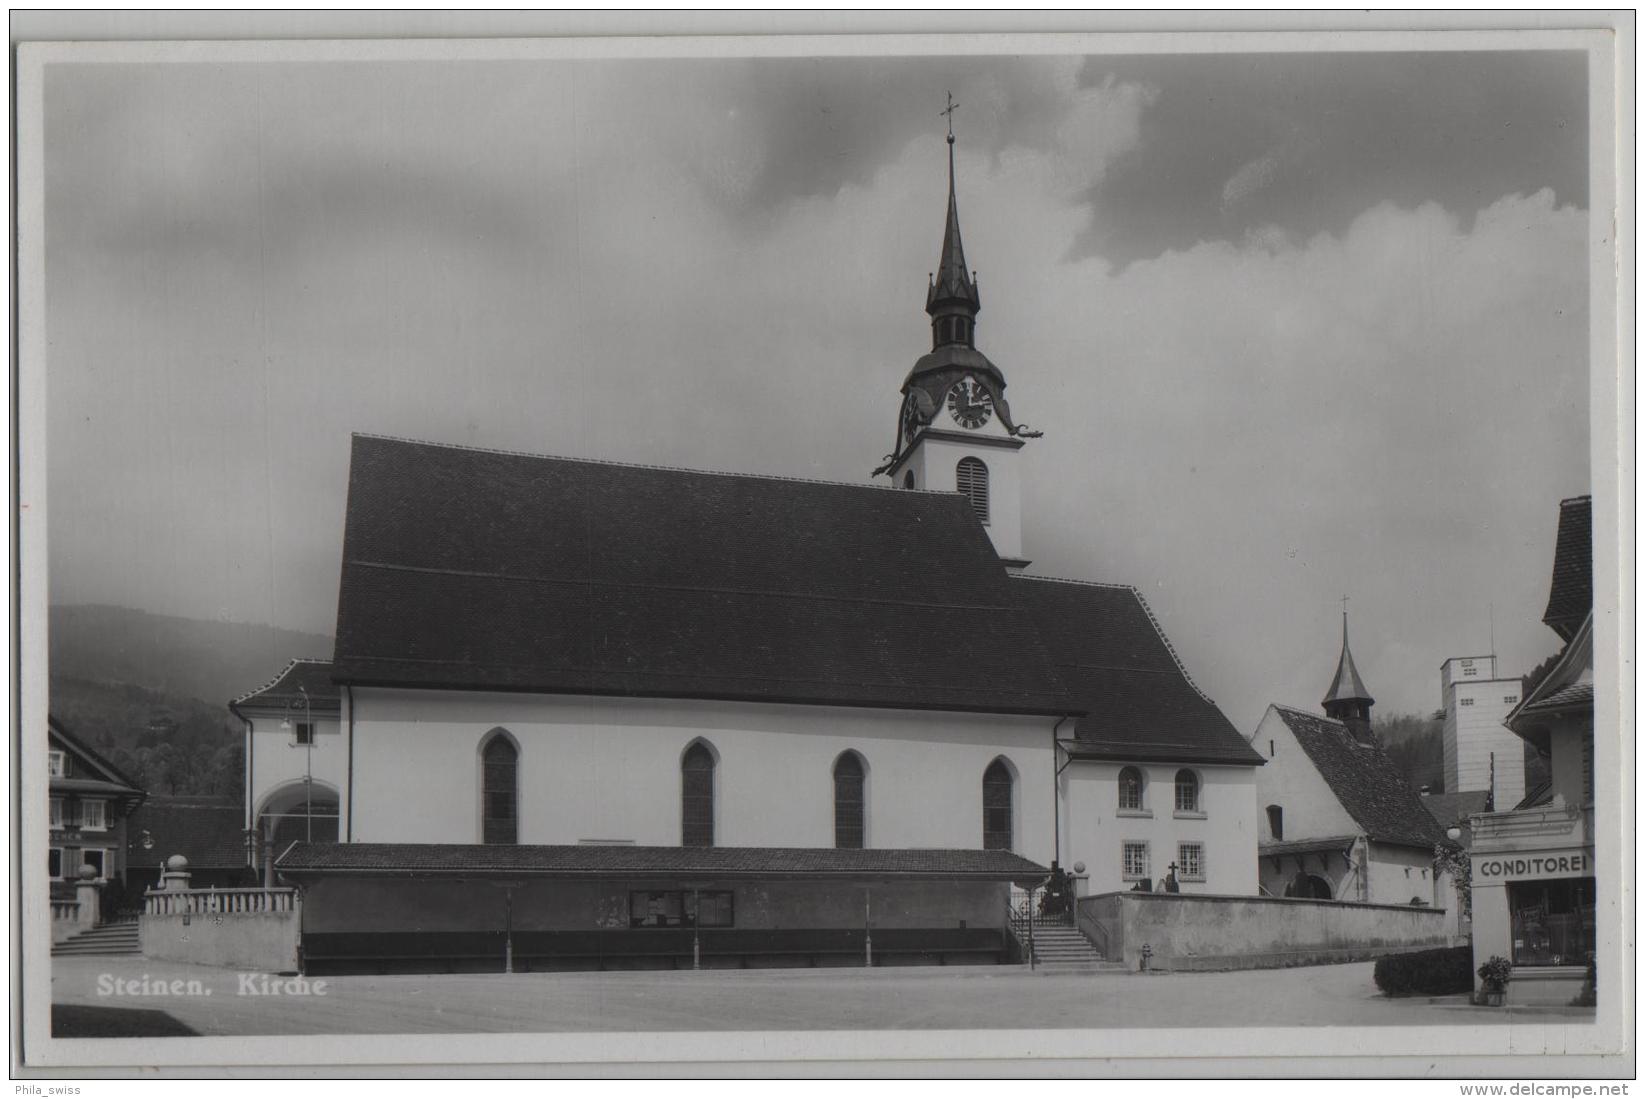 Steinen - Kirche - Conditorei - Photo: Globetrotter No. 5489 - Steinen